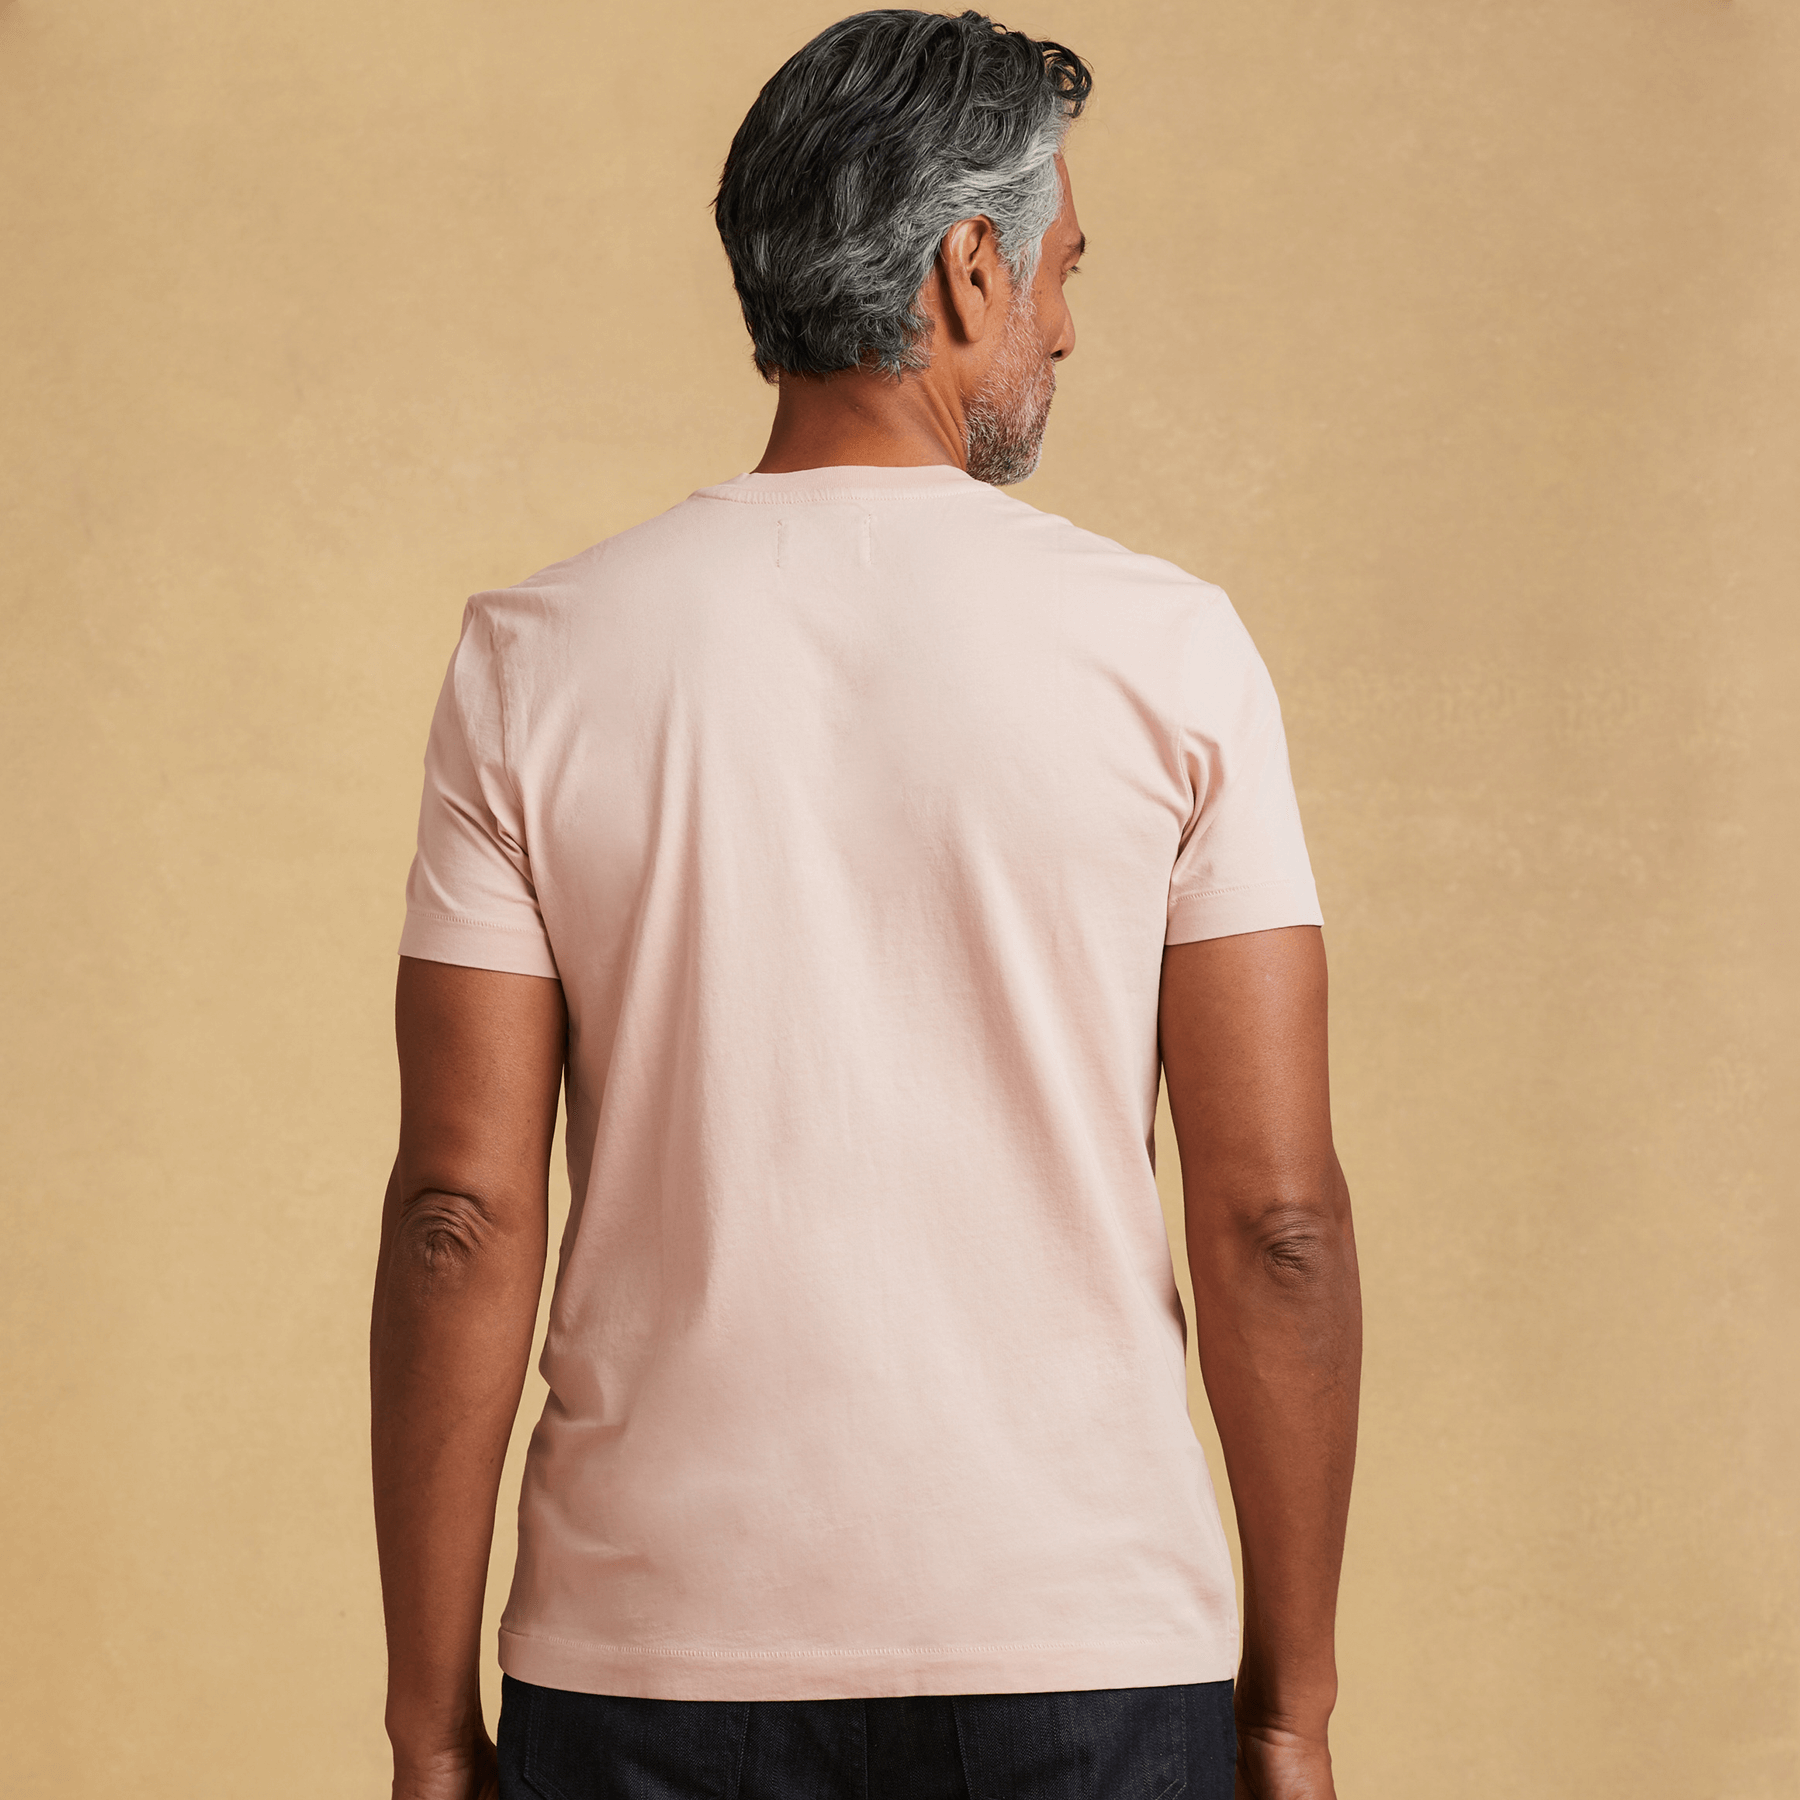 2022 Brand New Cotton Mens T-shirt Short-sleeve Man T shirt Short